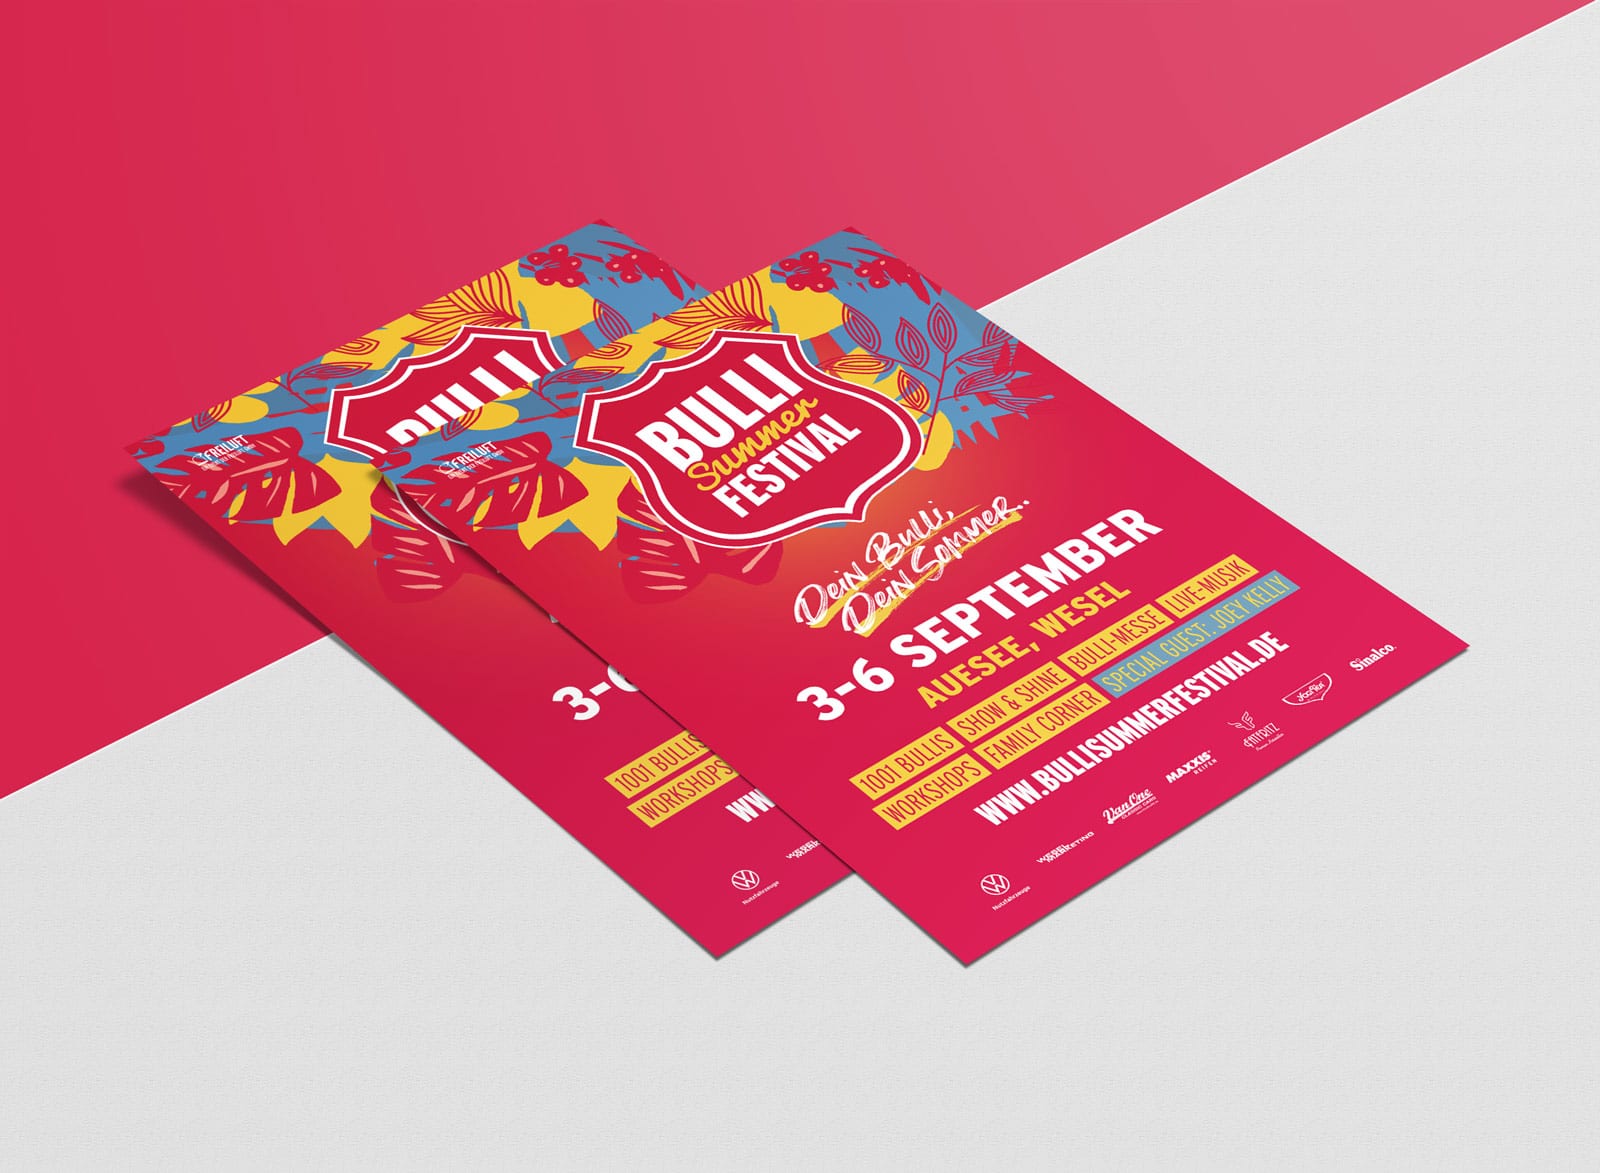 Let’s get it on! Der Bulli Summer Festival 2020 Flyer.